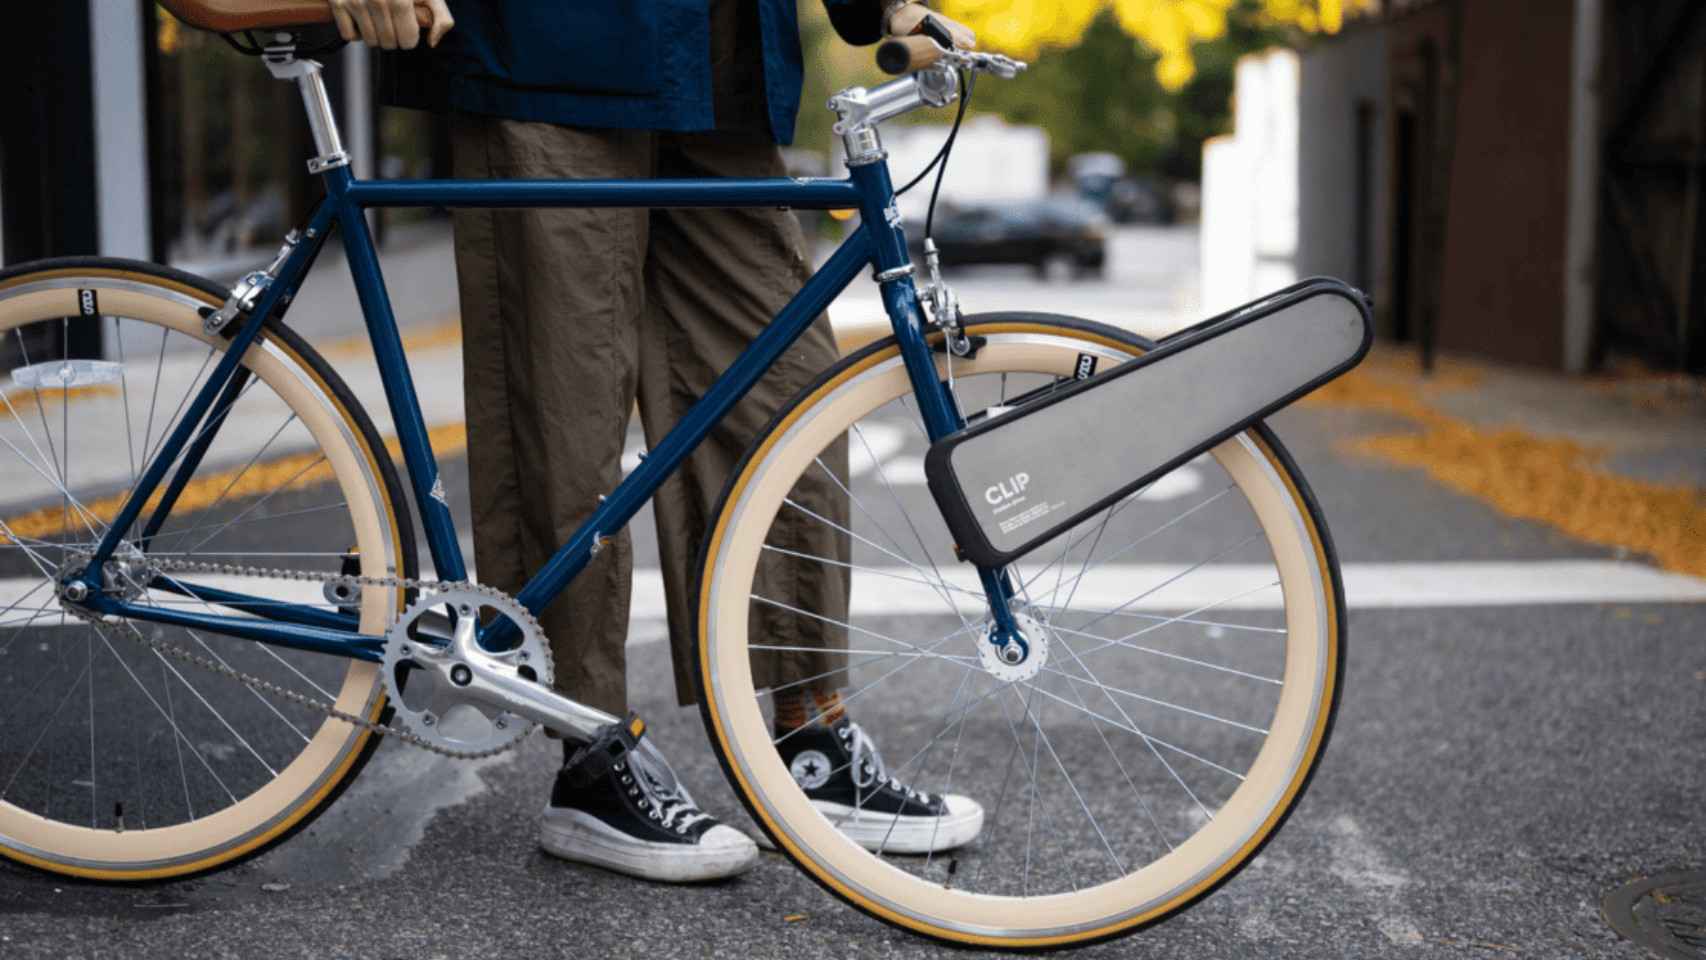 Percepción ensalada Tormenta CLIP, el innovador invento que convierte cualquier bicicleta en eléctrica  en sólo 10 segundos